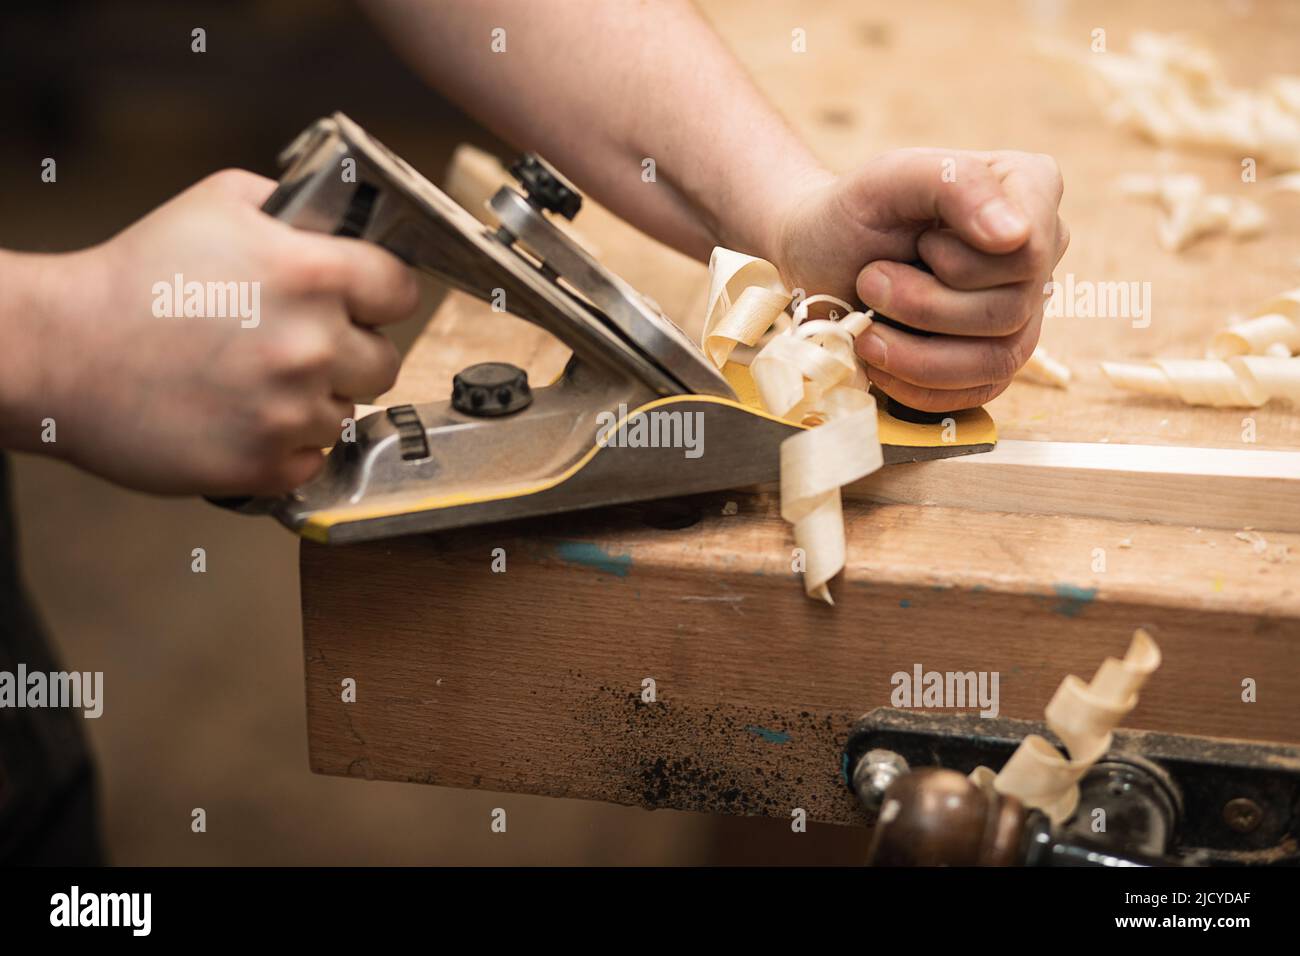 Primo piano delle mani del carpentiere tagliate che lavorano con l'attrezzatura dell'aereo sul banco da lavoro. Piallatrice per carpenteria in officina Foto Stock